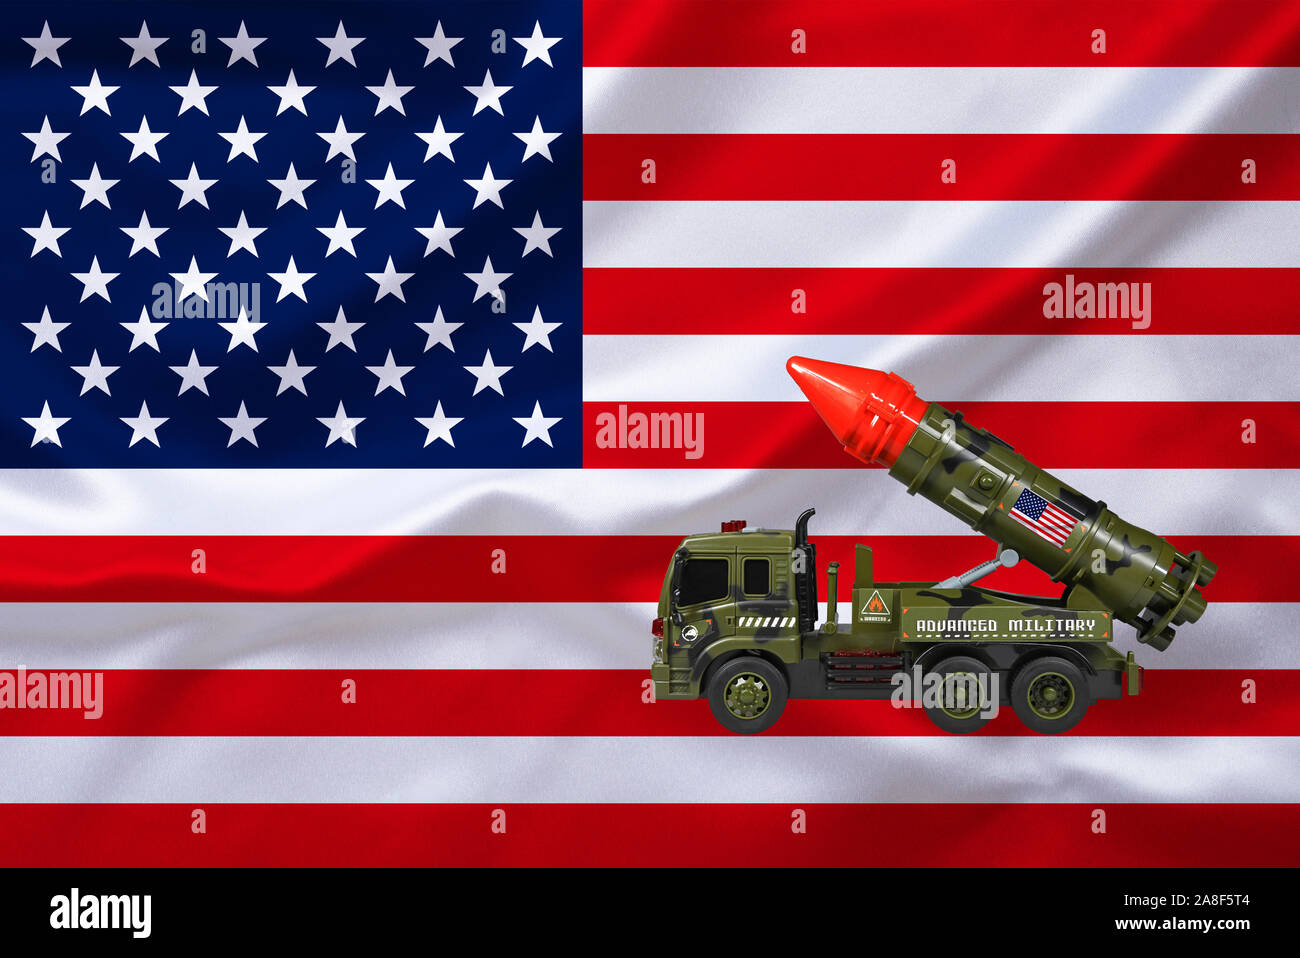 Flagge von USA, Vereinigte Staaten von Amerika, Truppenabzug aus Syrien, Raketenwerfer, Kurden, Kurdistan, Stock Photo